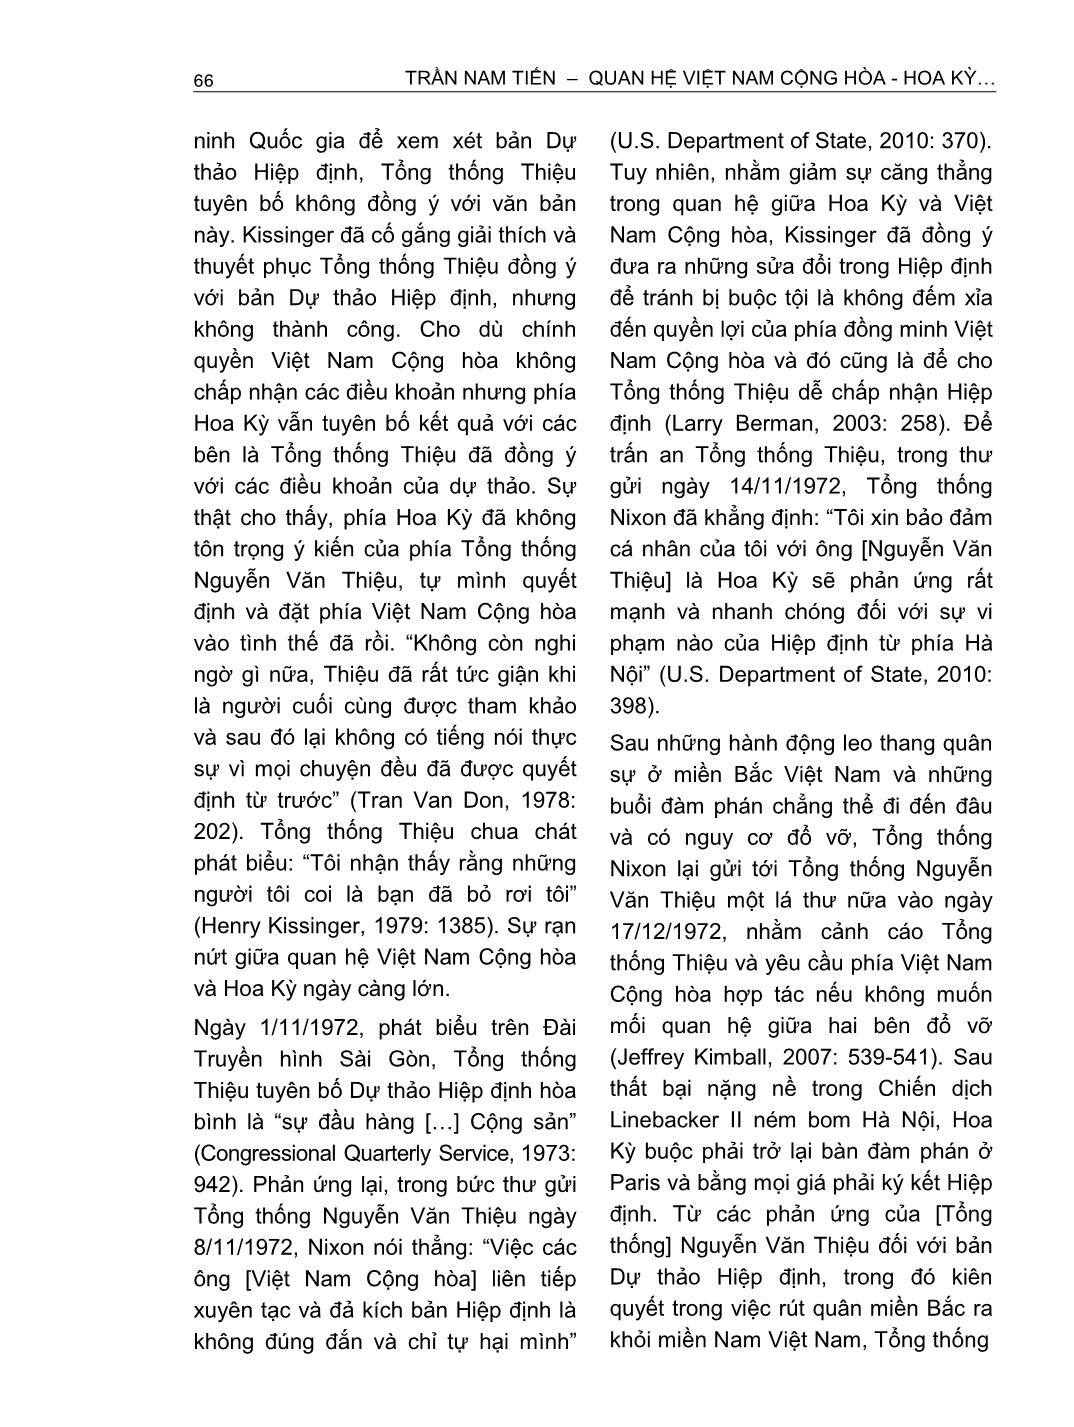 Quan hệ Việt Nam cộng hòa - Hoa Kỳ trong hội nghị Paris (1968 - 1973) trang 10